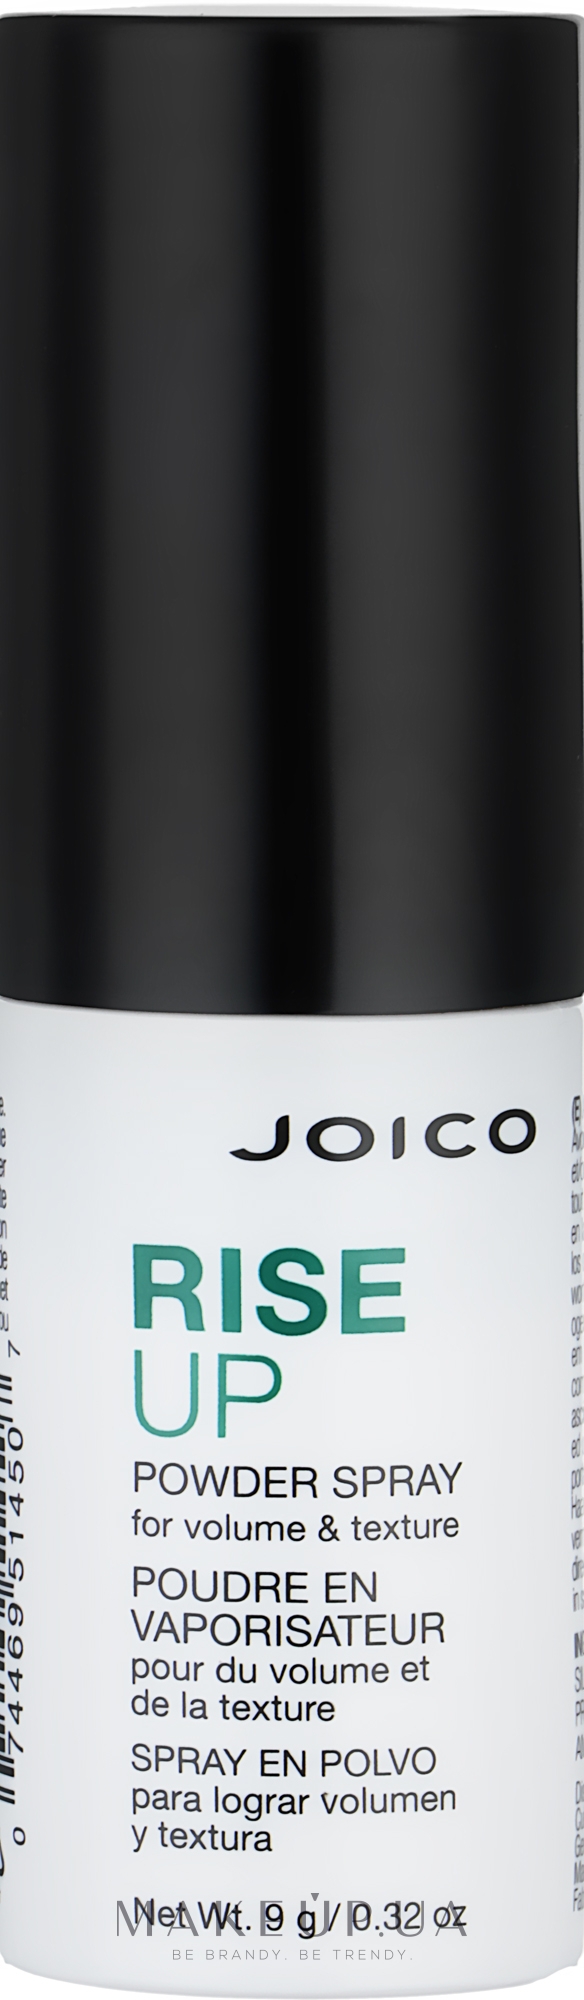 Спрей-пудра для додання текстури й об’єму - Joico Rise Up Powder Spray — фото 9g